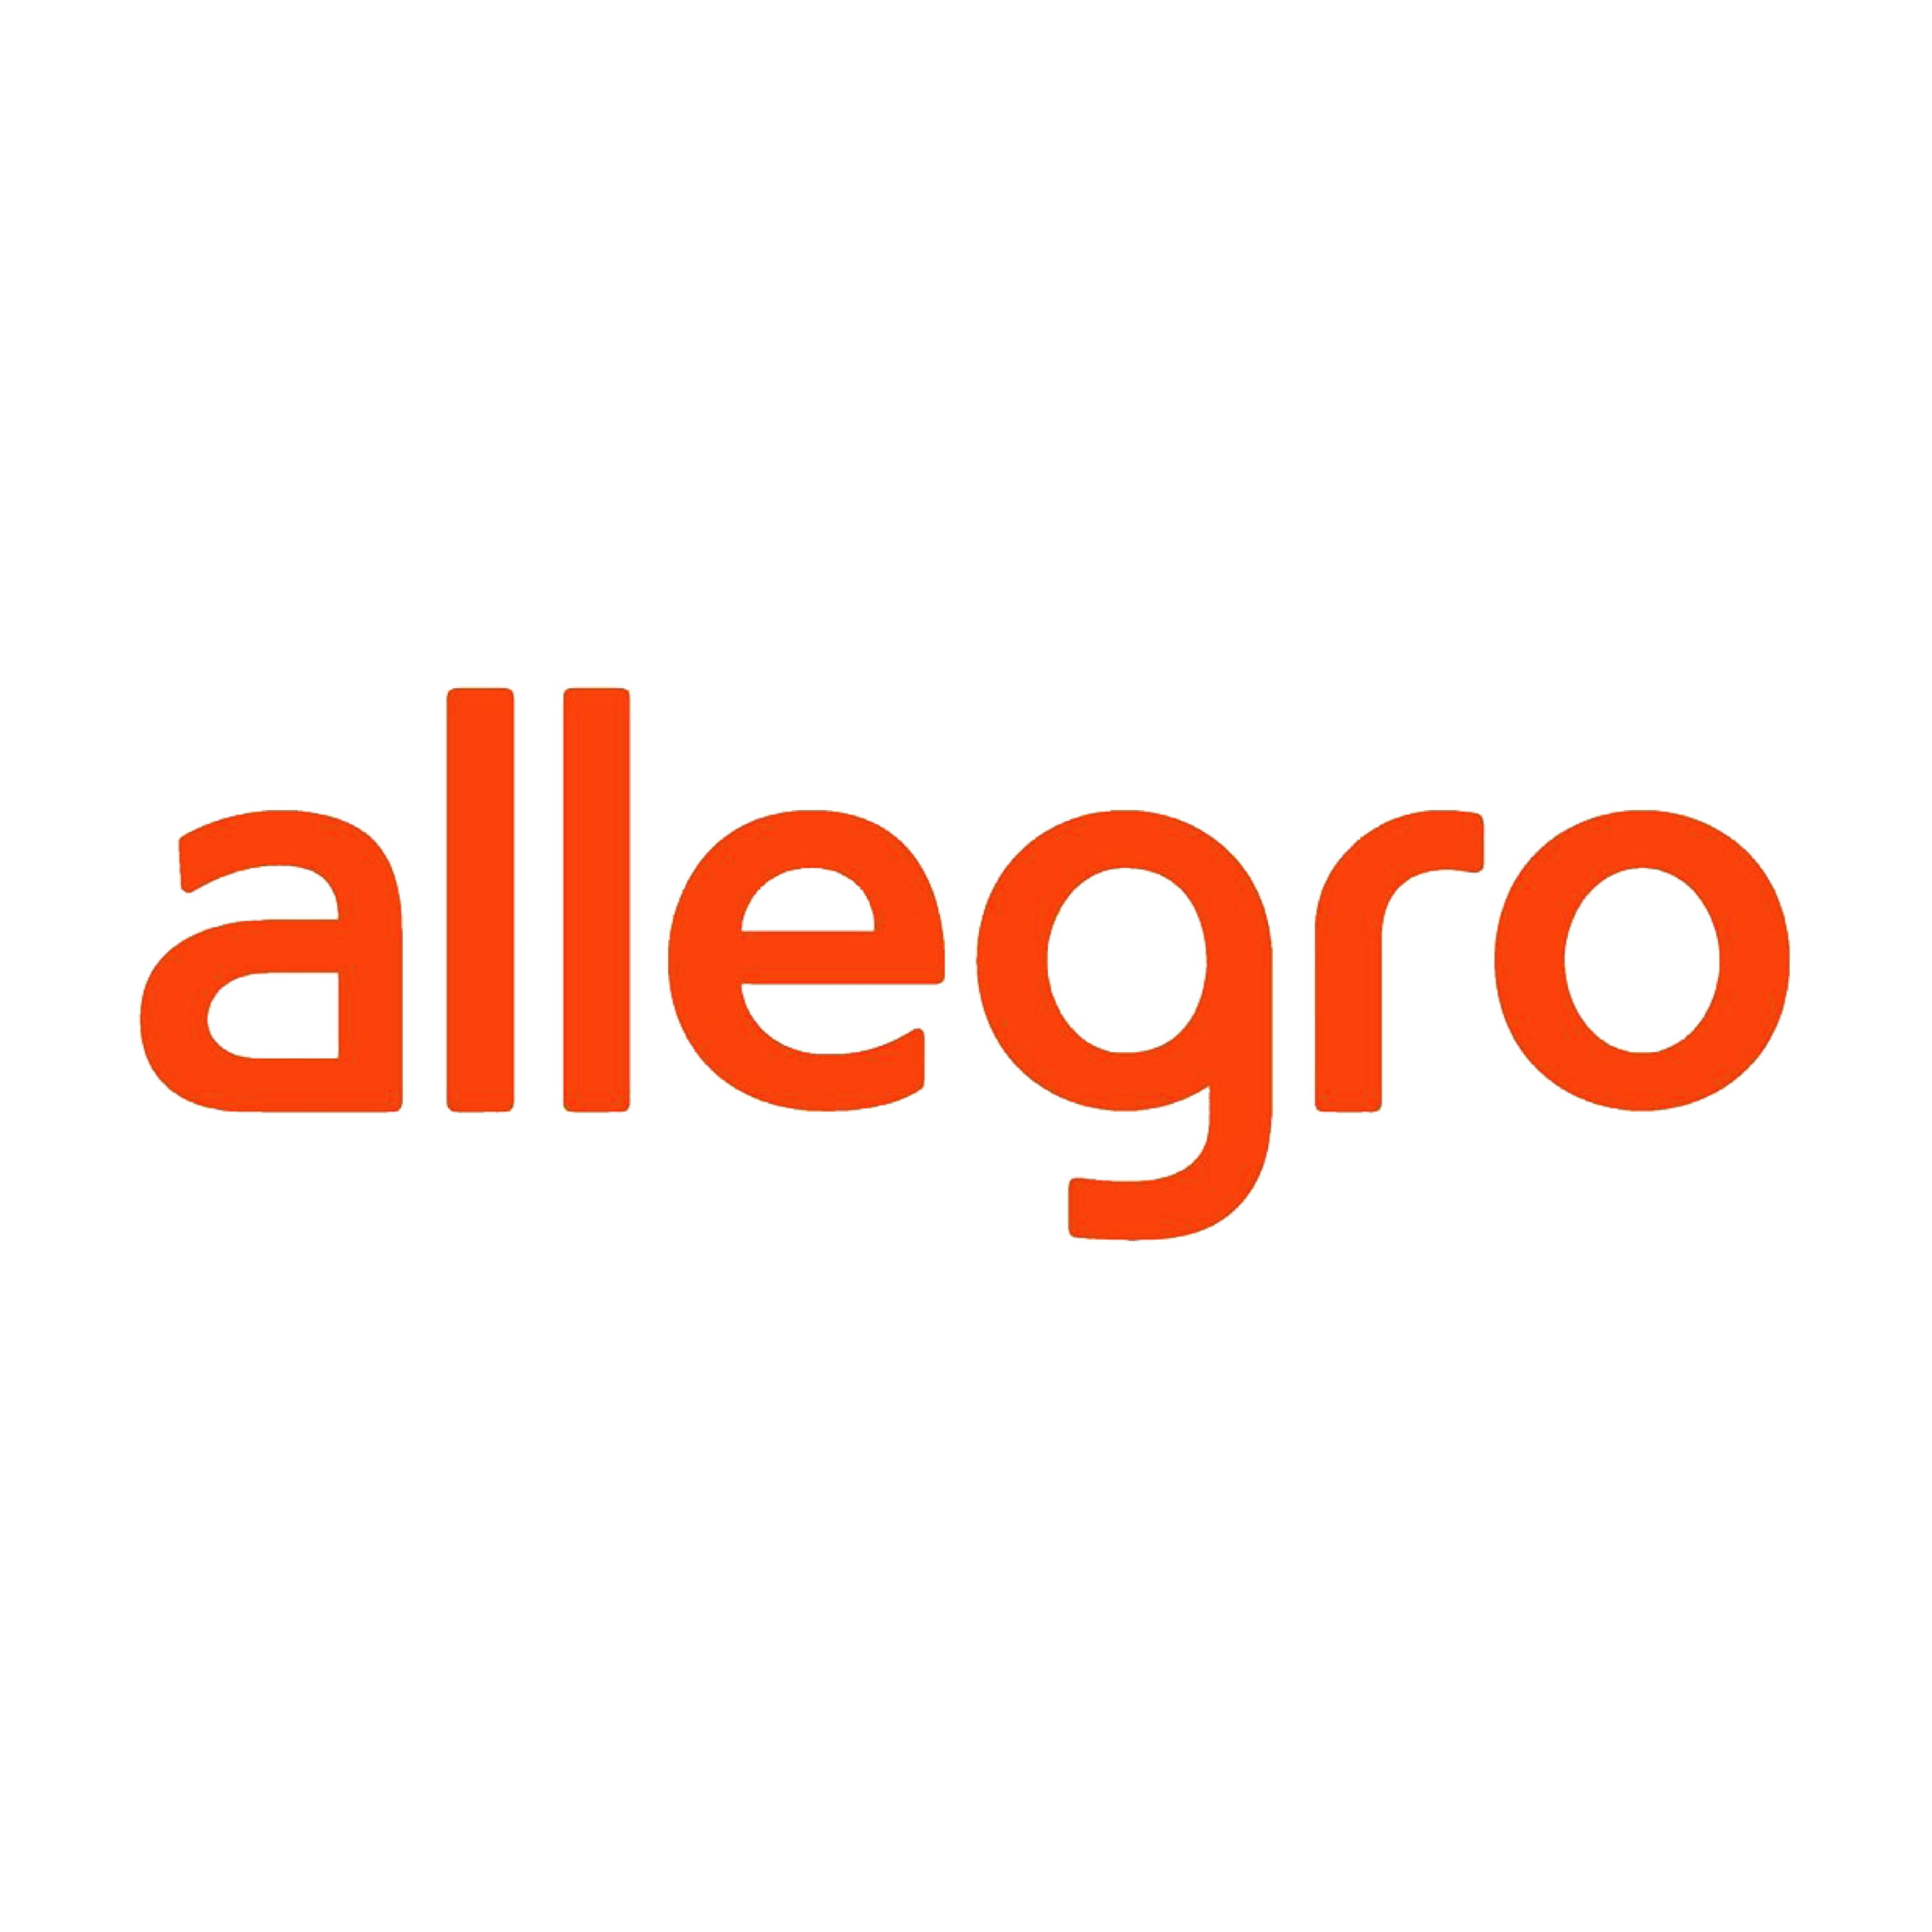 Allegro Smart Kupiony Ponad 100 Tys Razy W Ciagu 7 Dni Od Startu